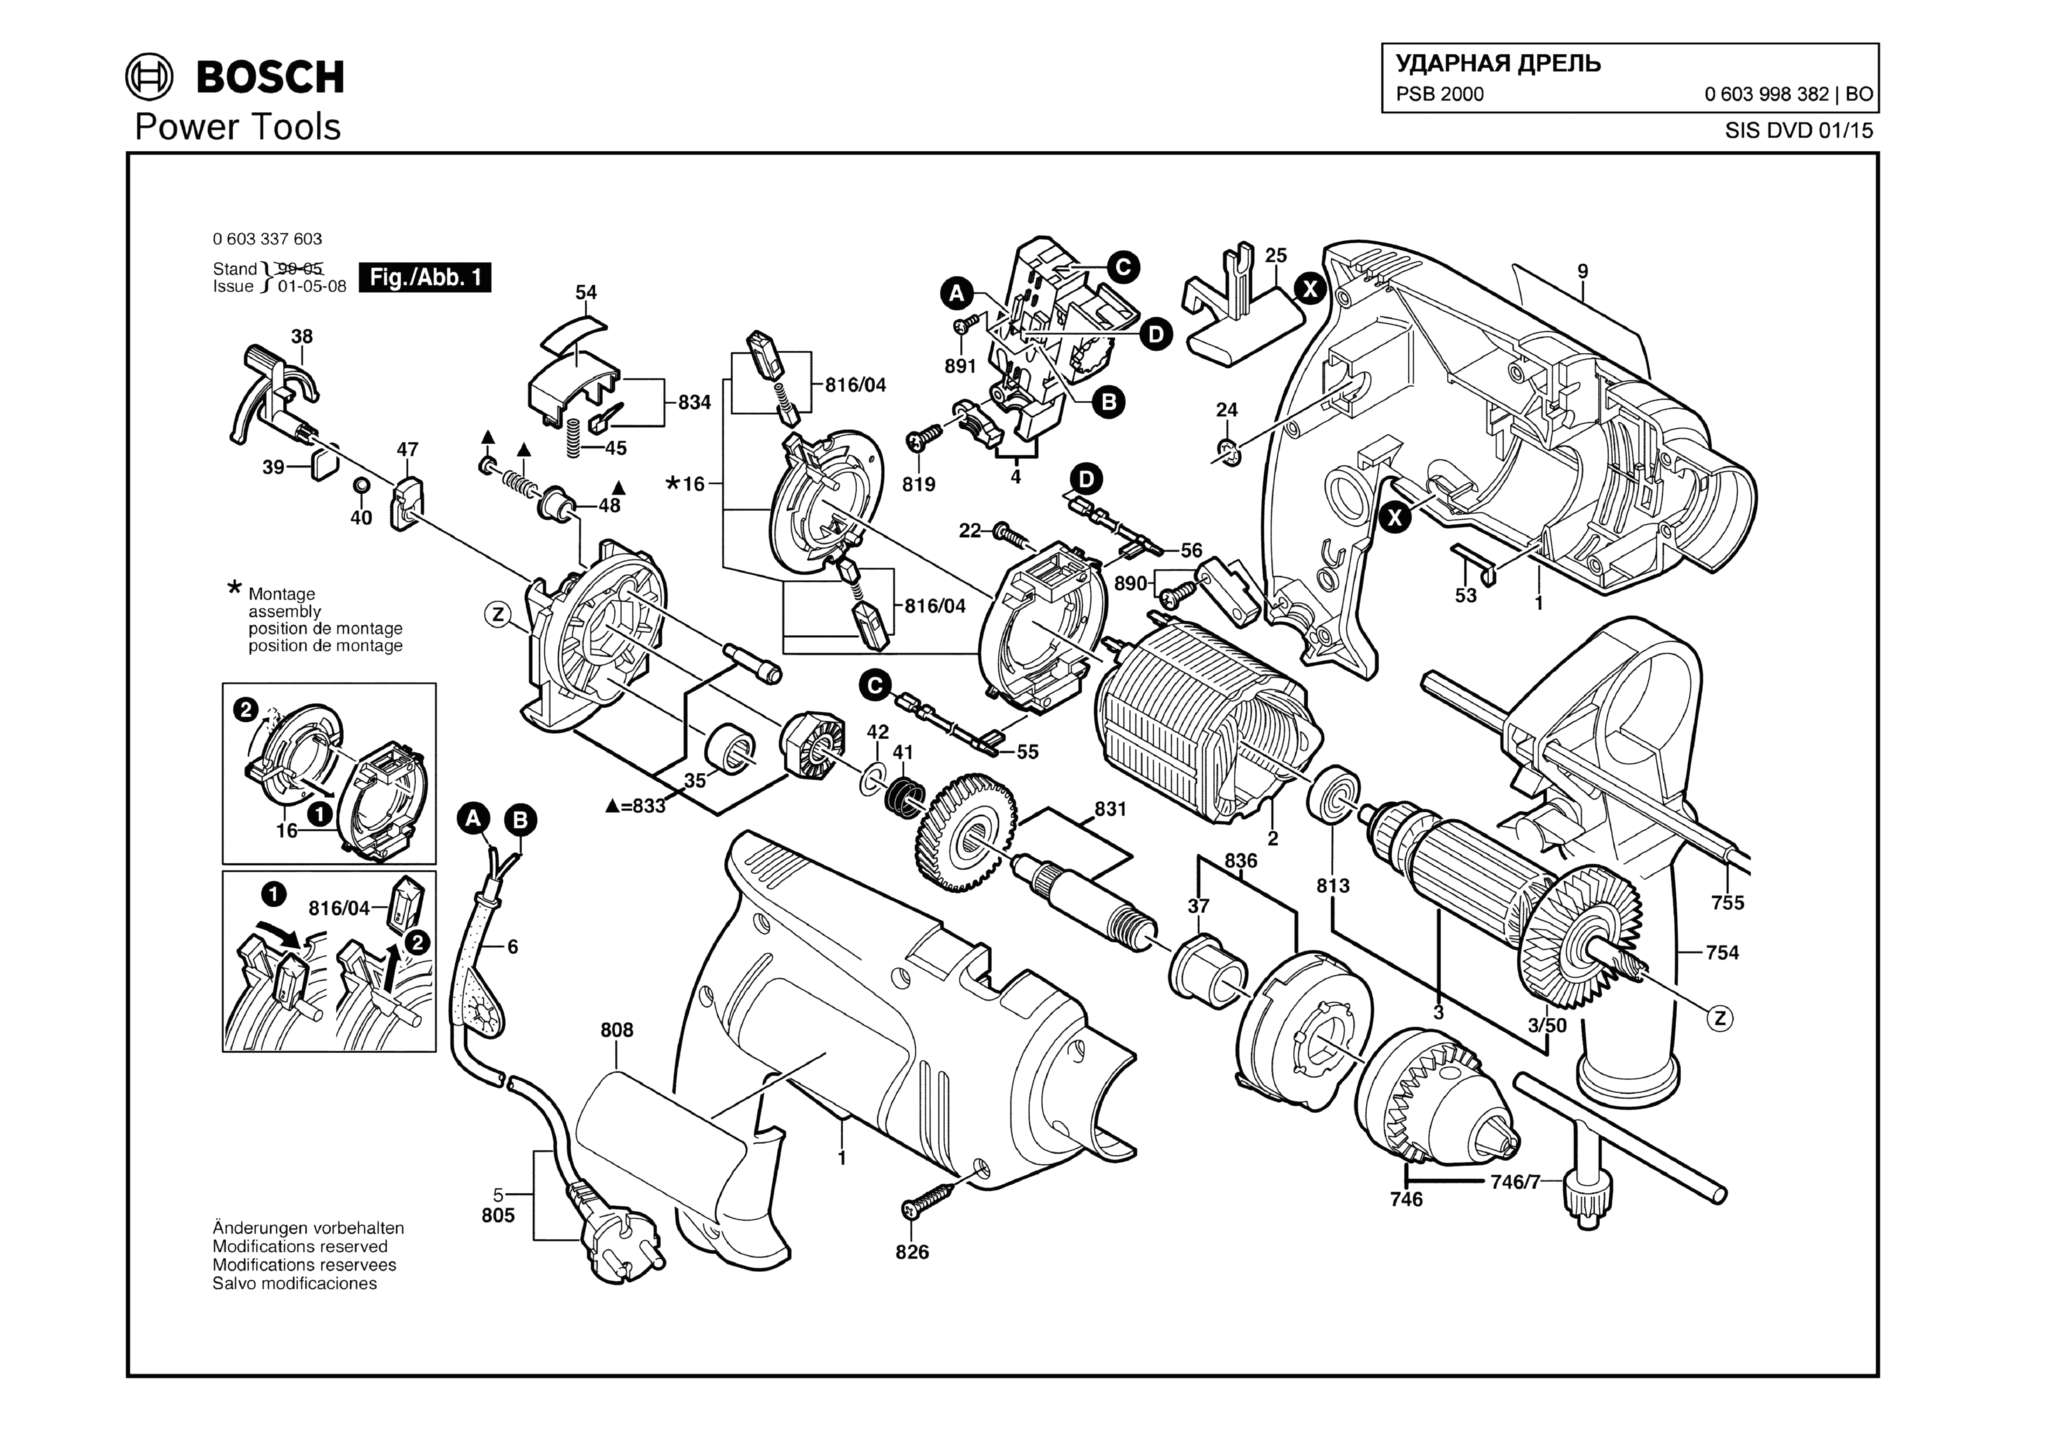 Запчасти, схема и деталировка Bosch PSB 2000 (ТИП 0603998382)